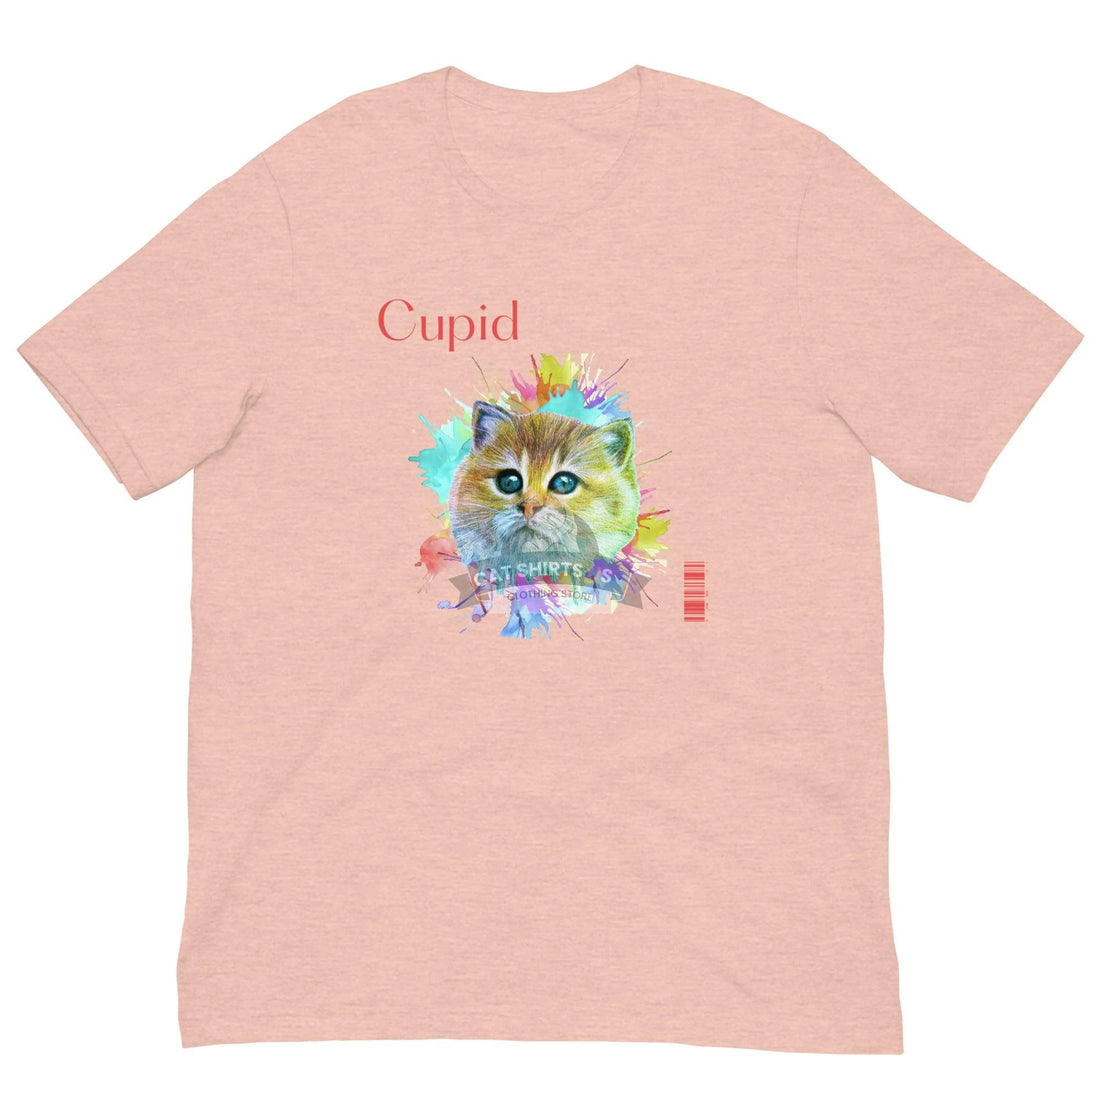 Cupid Cat Shirt - Cat Shirts USA